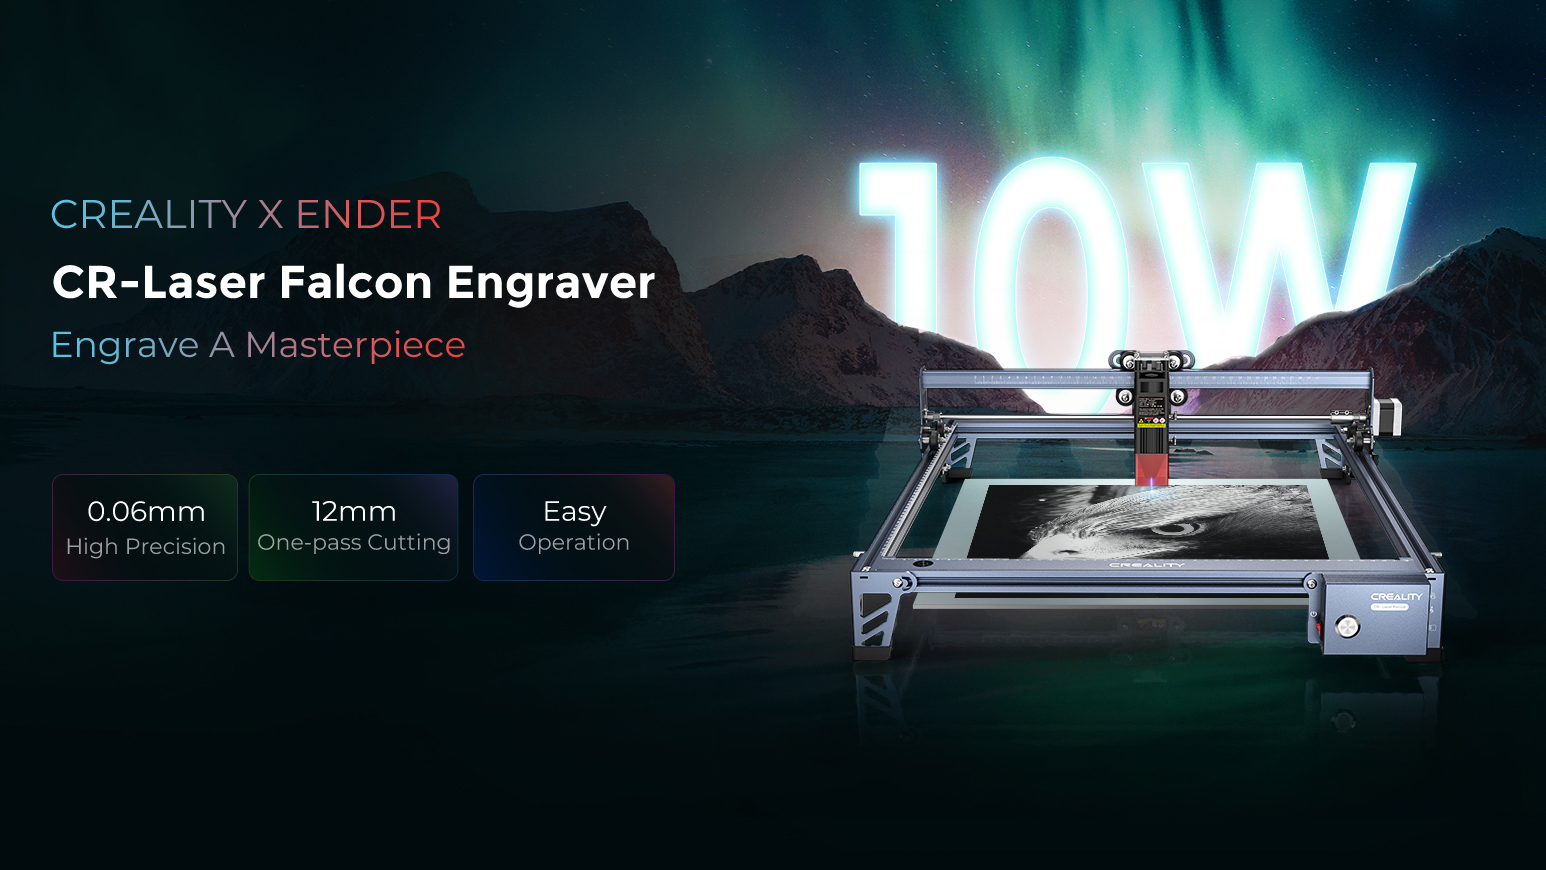 CR-Laser Falcon Laser Engraver (10W) - Creality 3D